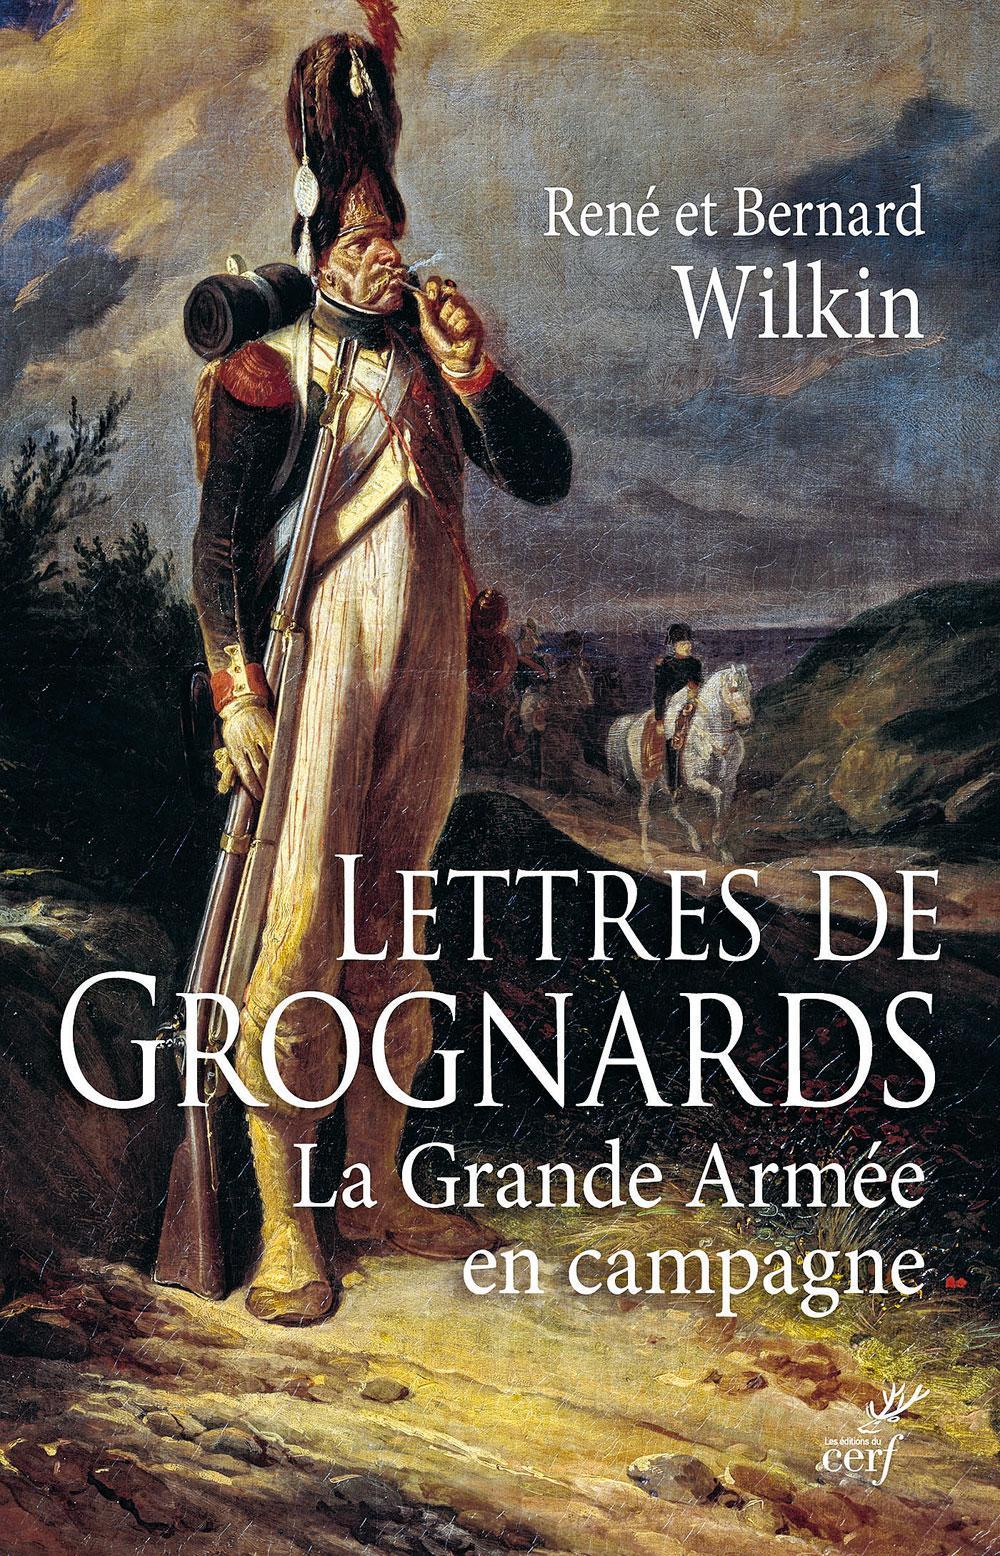 (1) Lettres de grognards. La Grande Armée en campagne, par René et Bernard Wilkin, Les Editions du cerf, 140 p. Sortie le 14 février 2019.